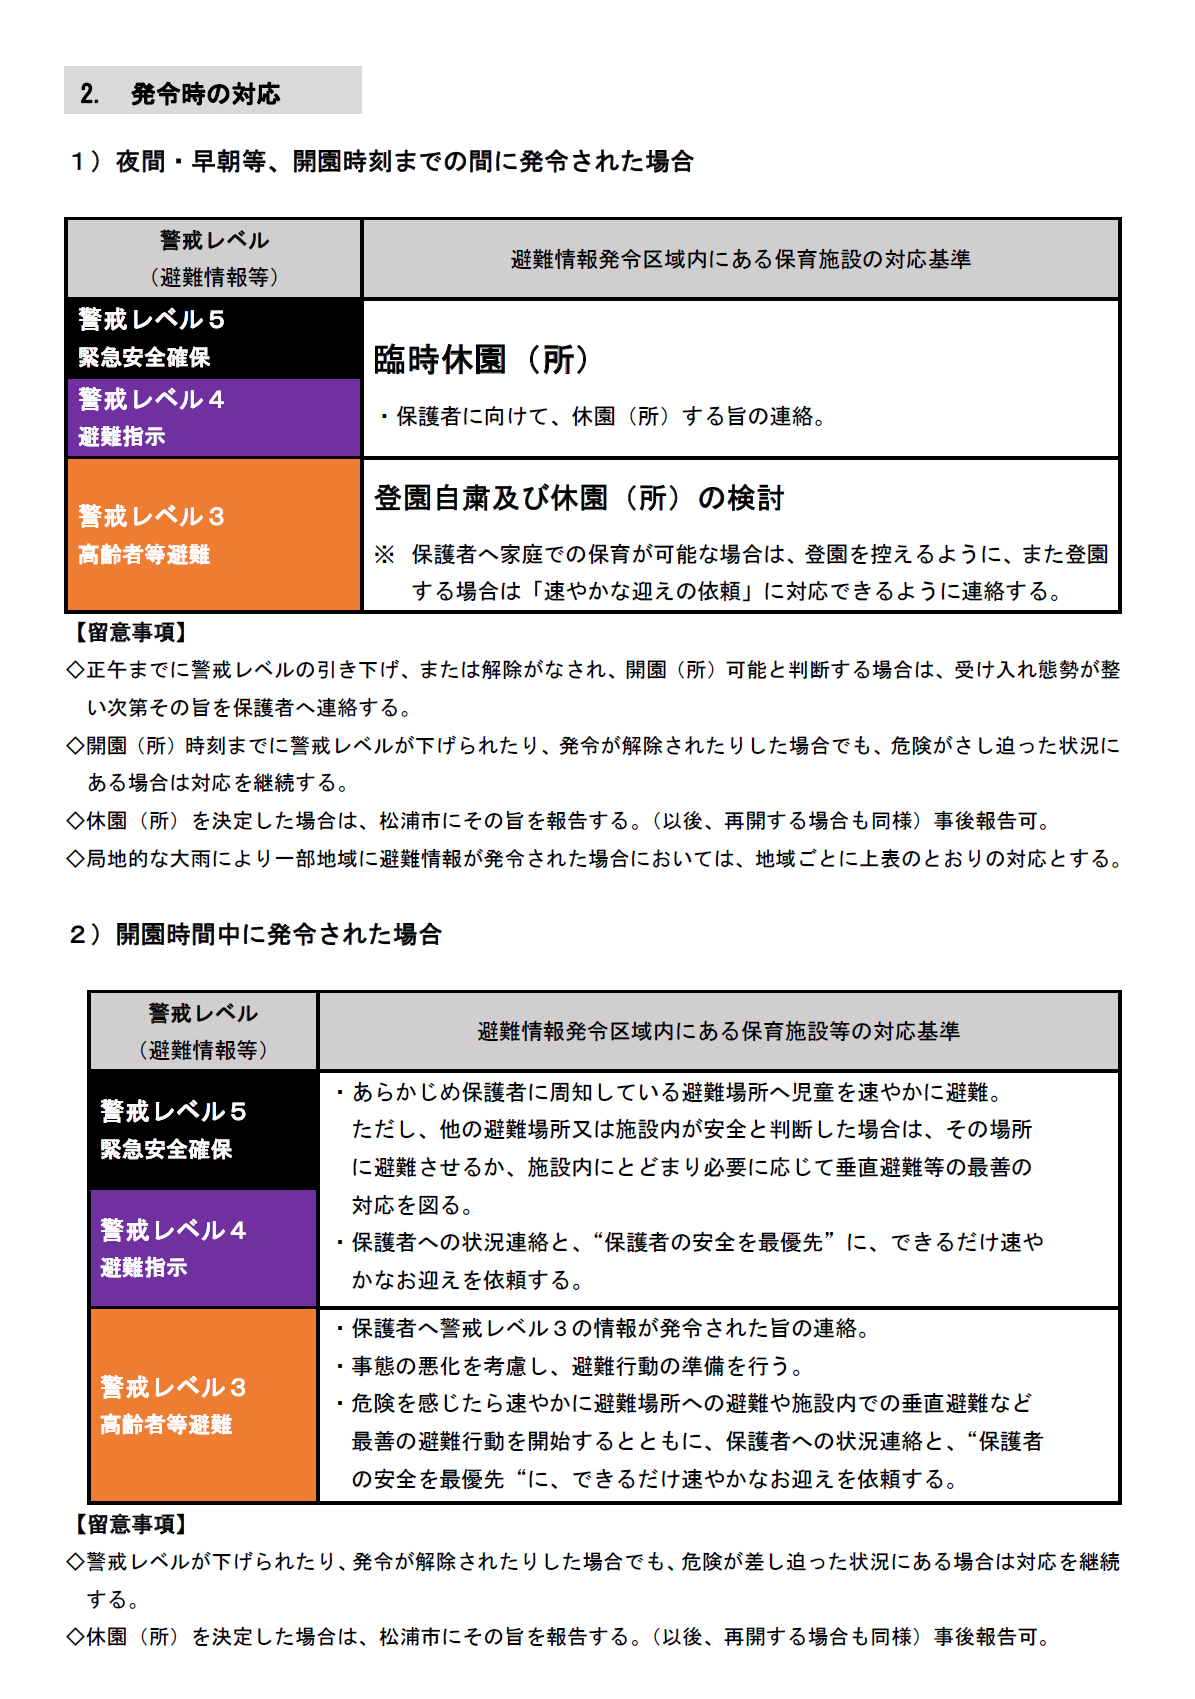 松浦市内の保育施設等における避難情報発令時の対応基準2